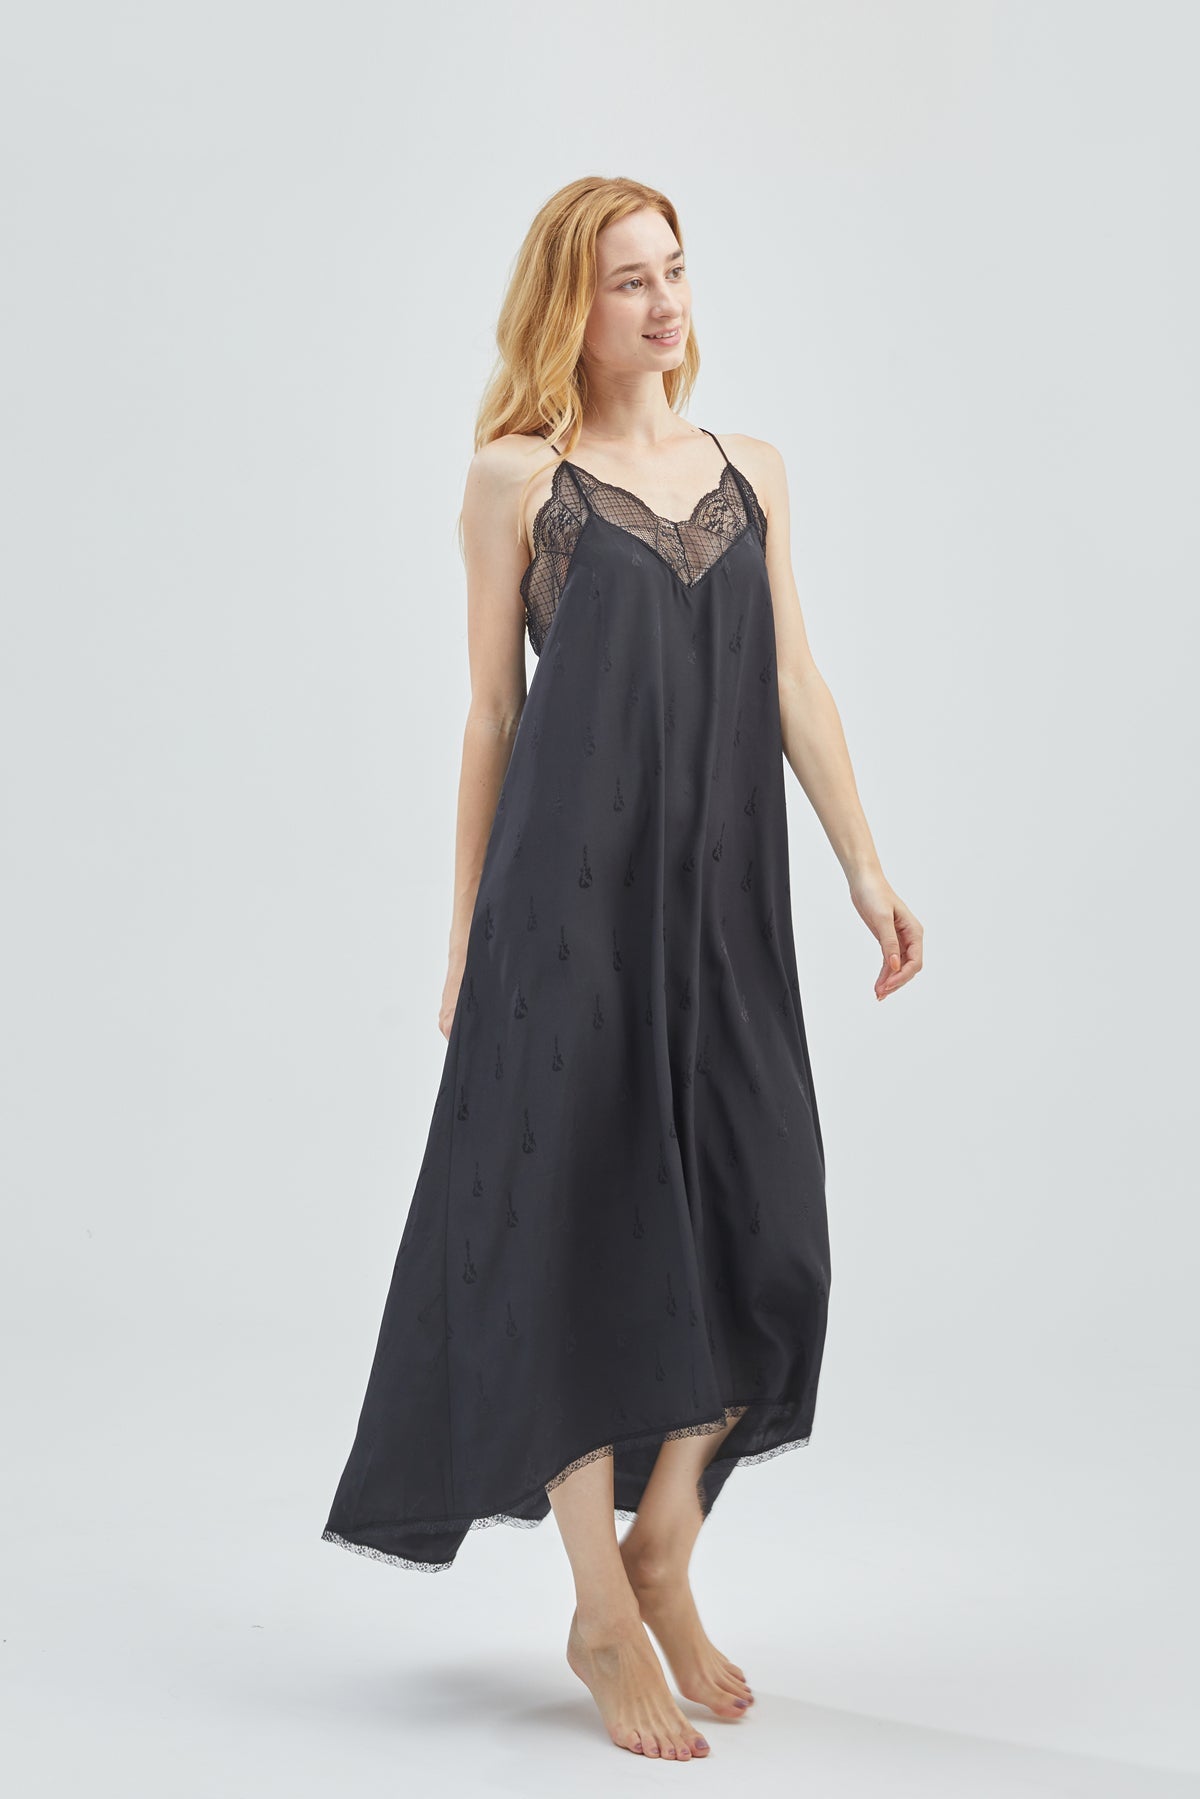 GRALACE Lace Long Silk Dress